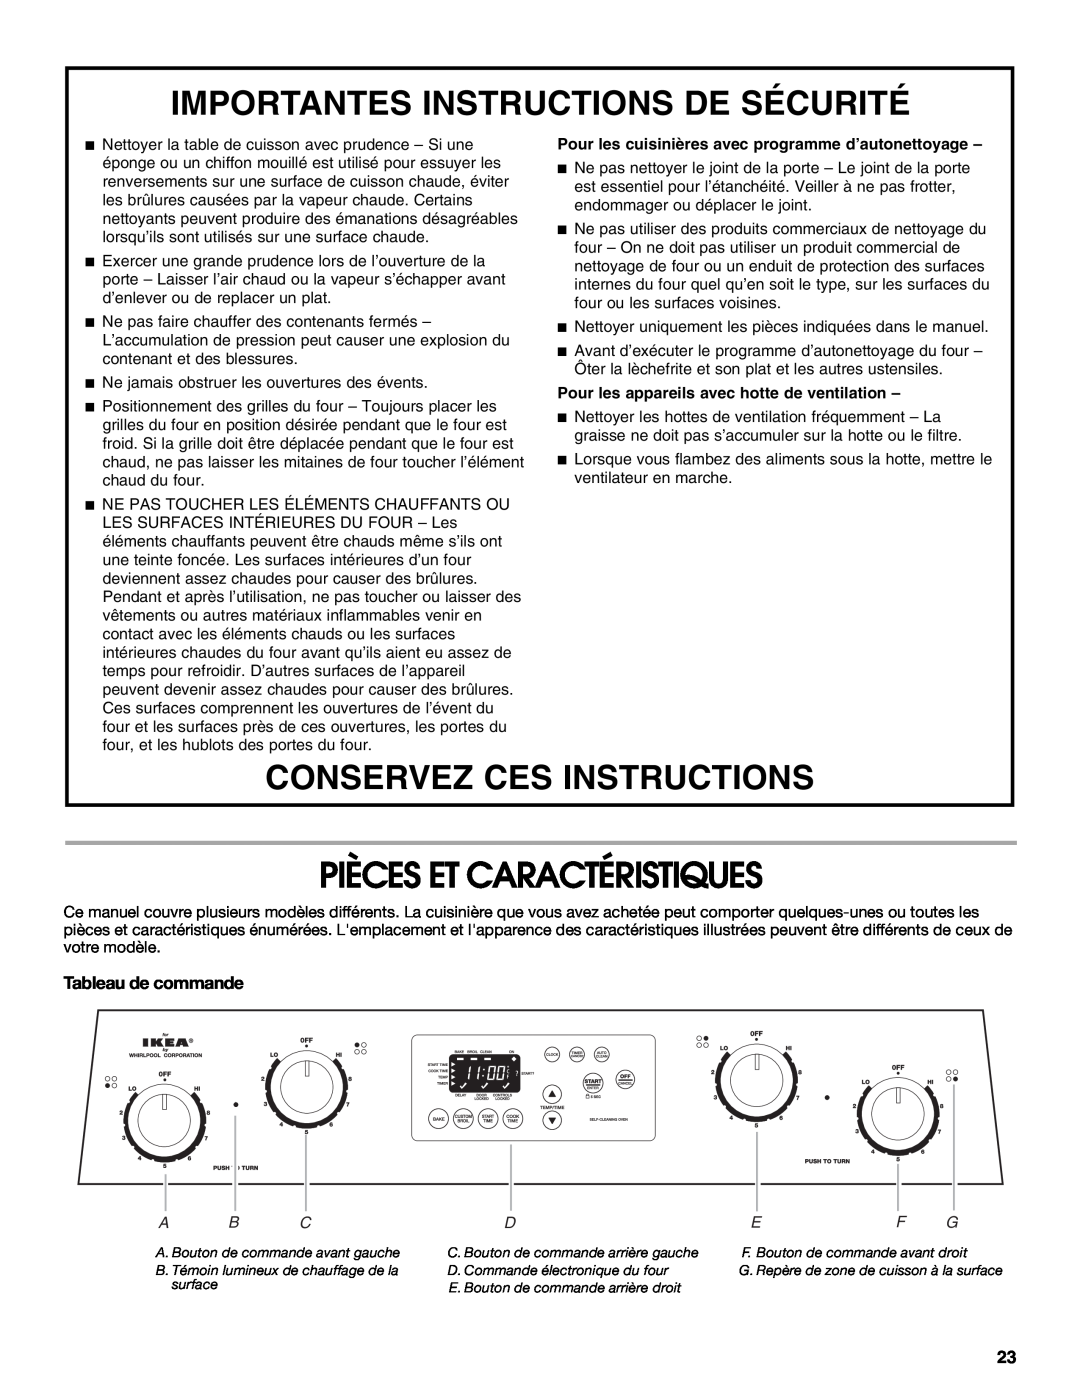 Whirlpool YIES366RS1 manual Pièces Et Caractéristiques, Tableau de commande, A B C, Importantes Instructions De Sécurité 